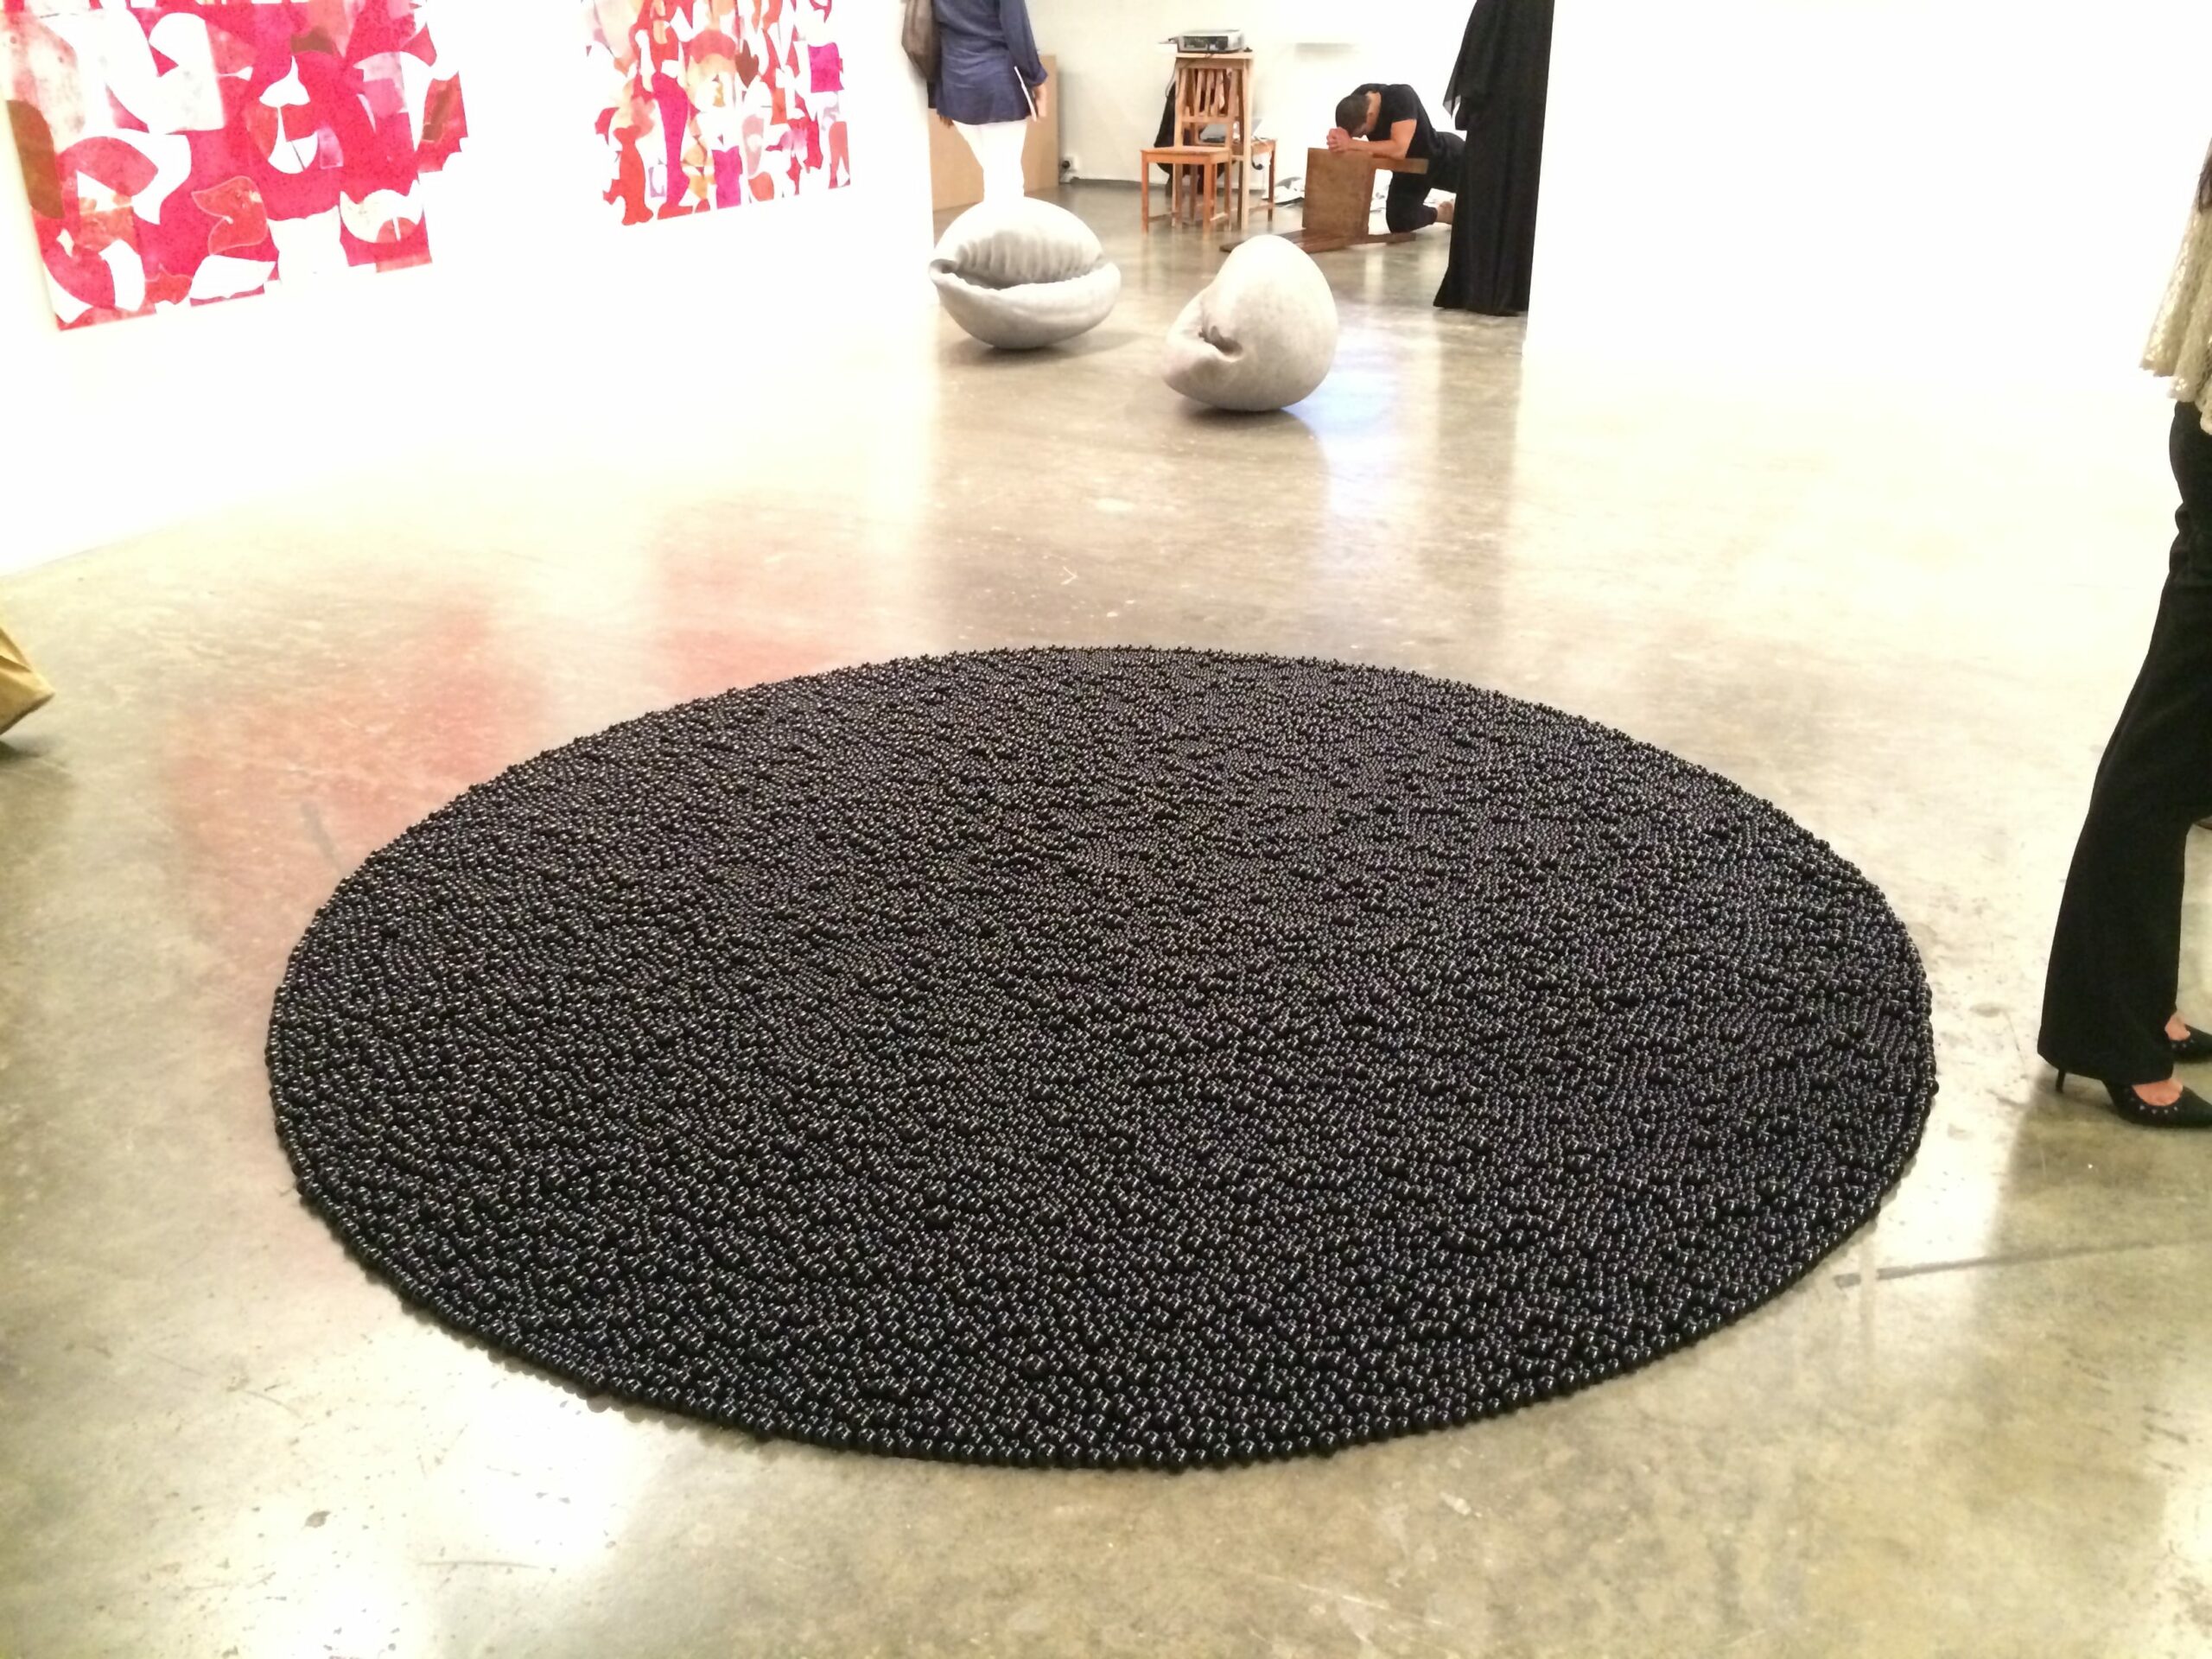 Mona Hatoum , cercle, billes de verre présentée par la galerie Chantal Crousel